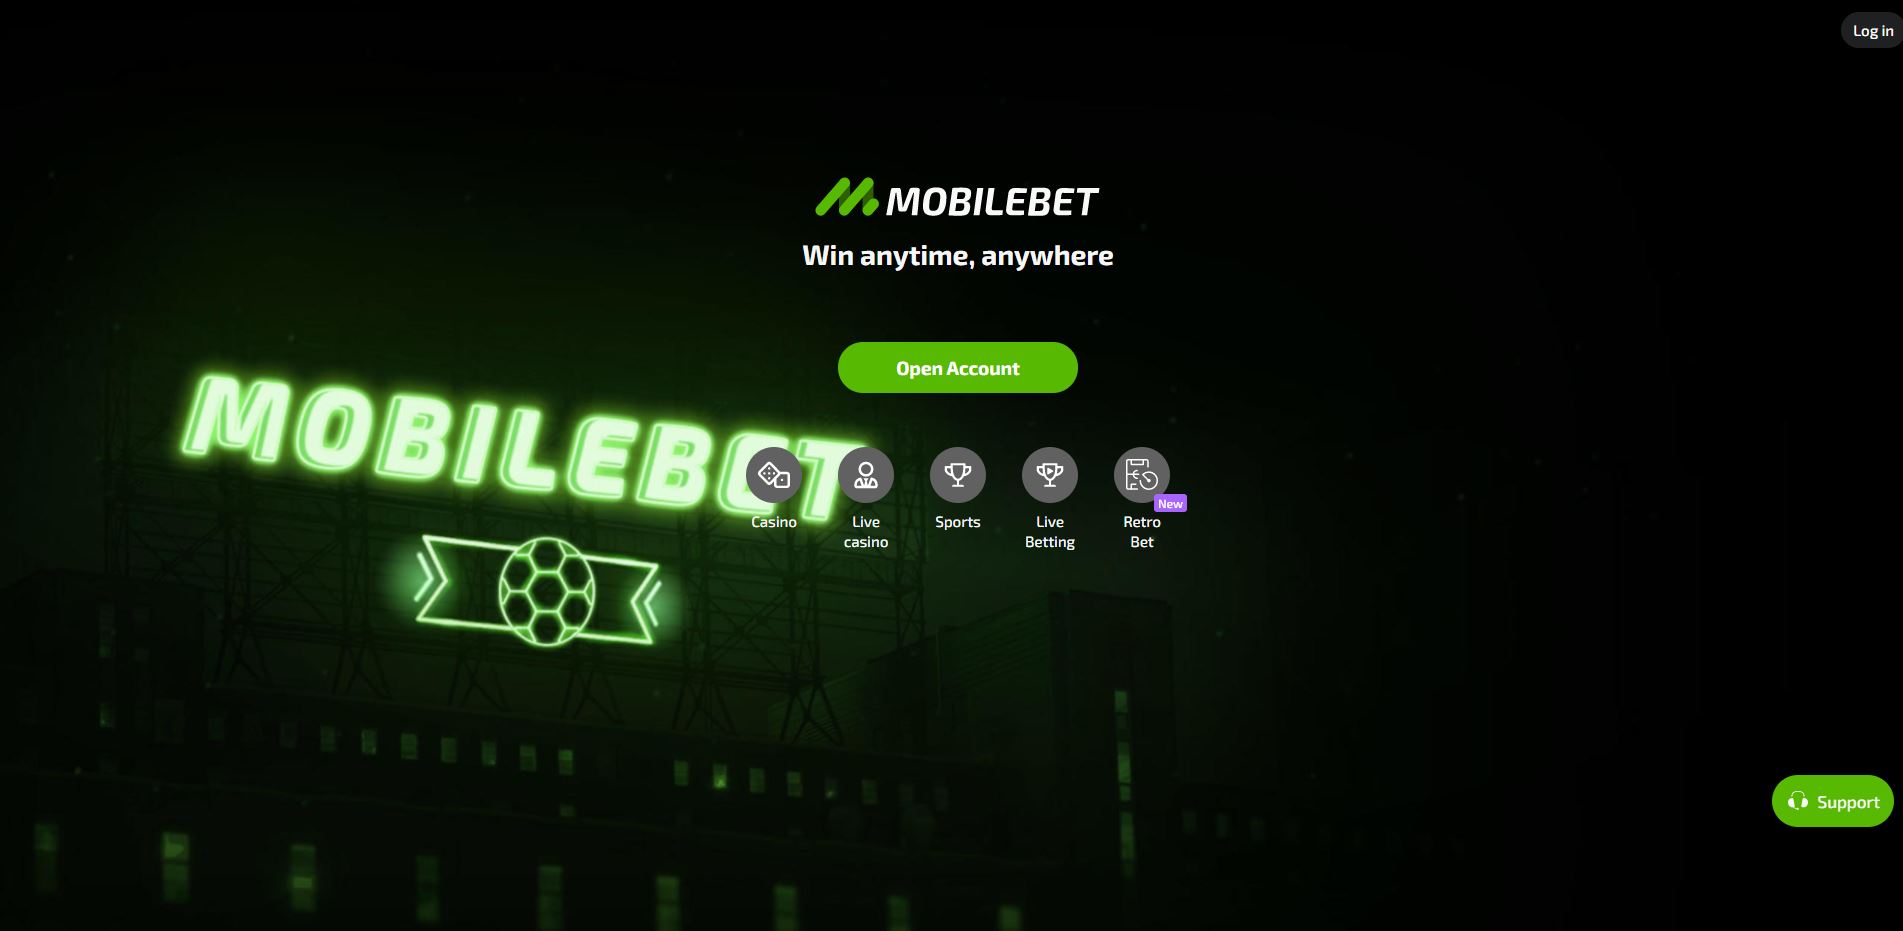 mobilebet home page